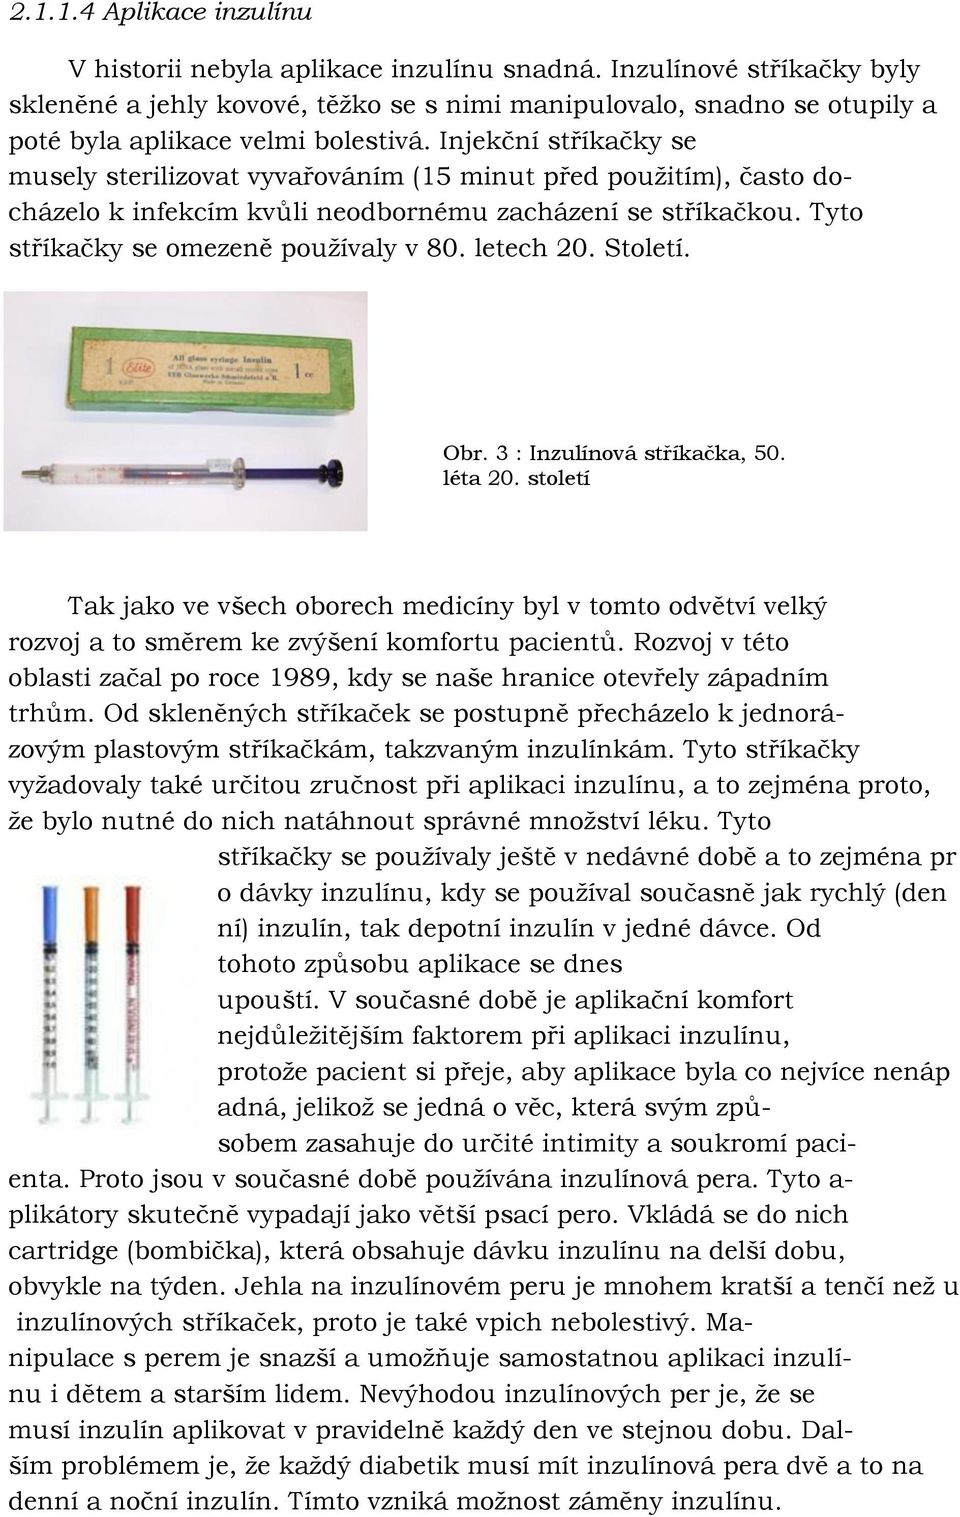 Injekční stříkačky se musely sterilizovat vyvařováním (15 minut před pouţitím), často docházelo k infekcím kvůli neodbornému zacházení se stříkačkou. Tyto stříkačky se omezeně pouţívaly v 80.